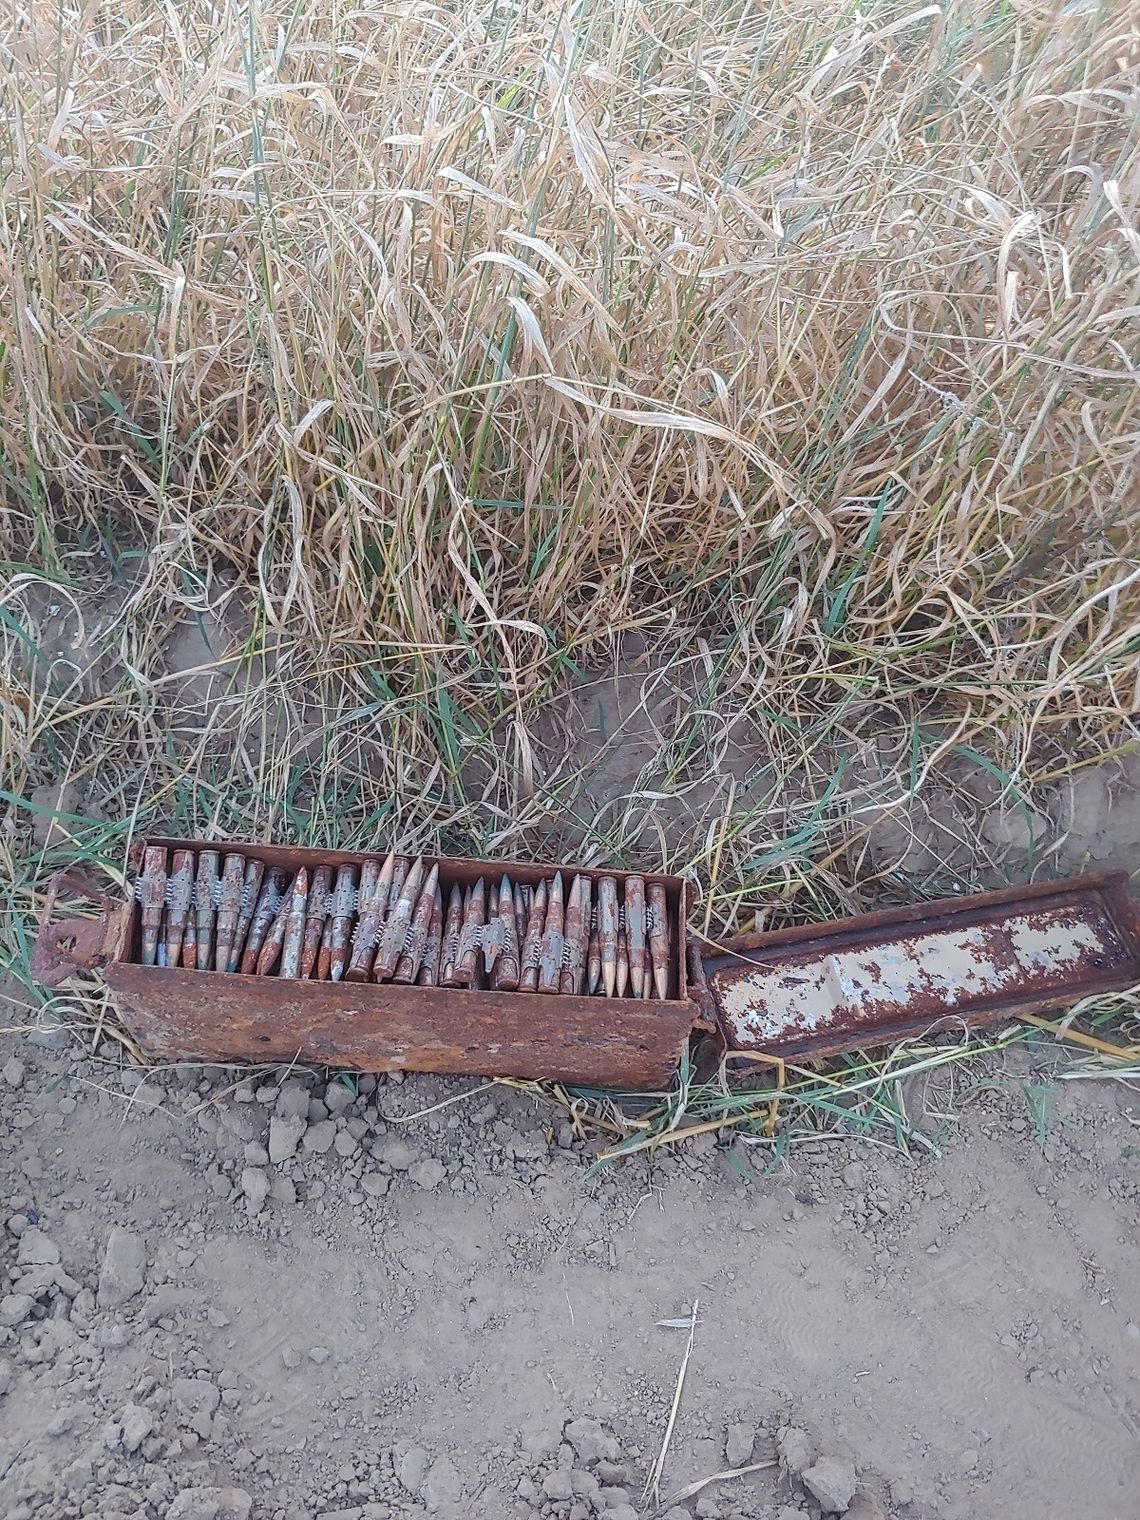 Skrzynka z amunicja karabinową odnaleziona w regionie podczas prac polowych